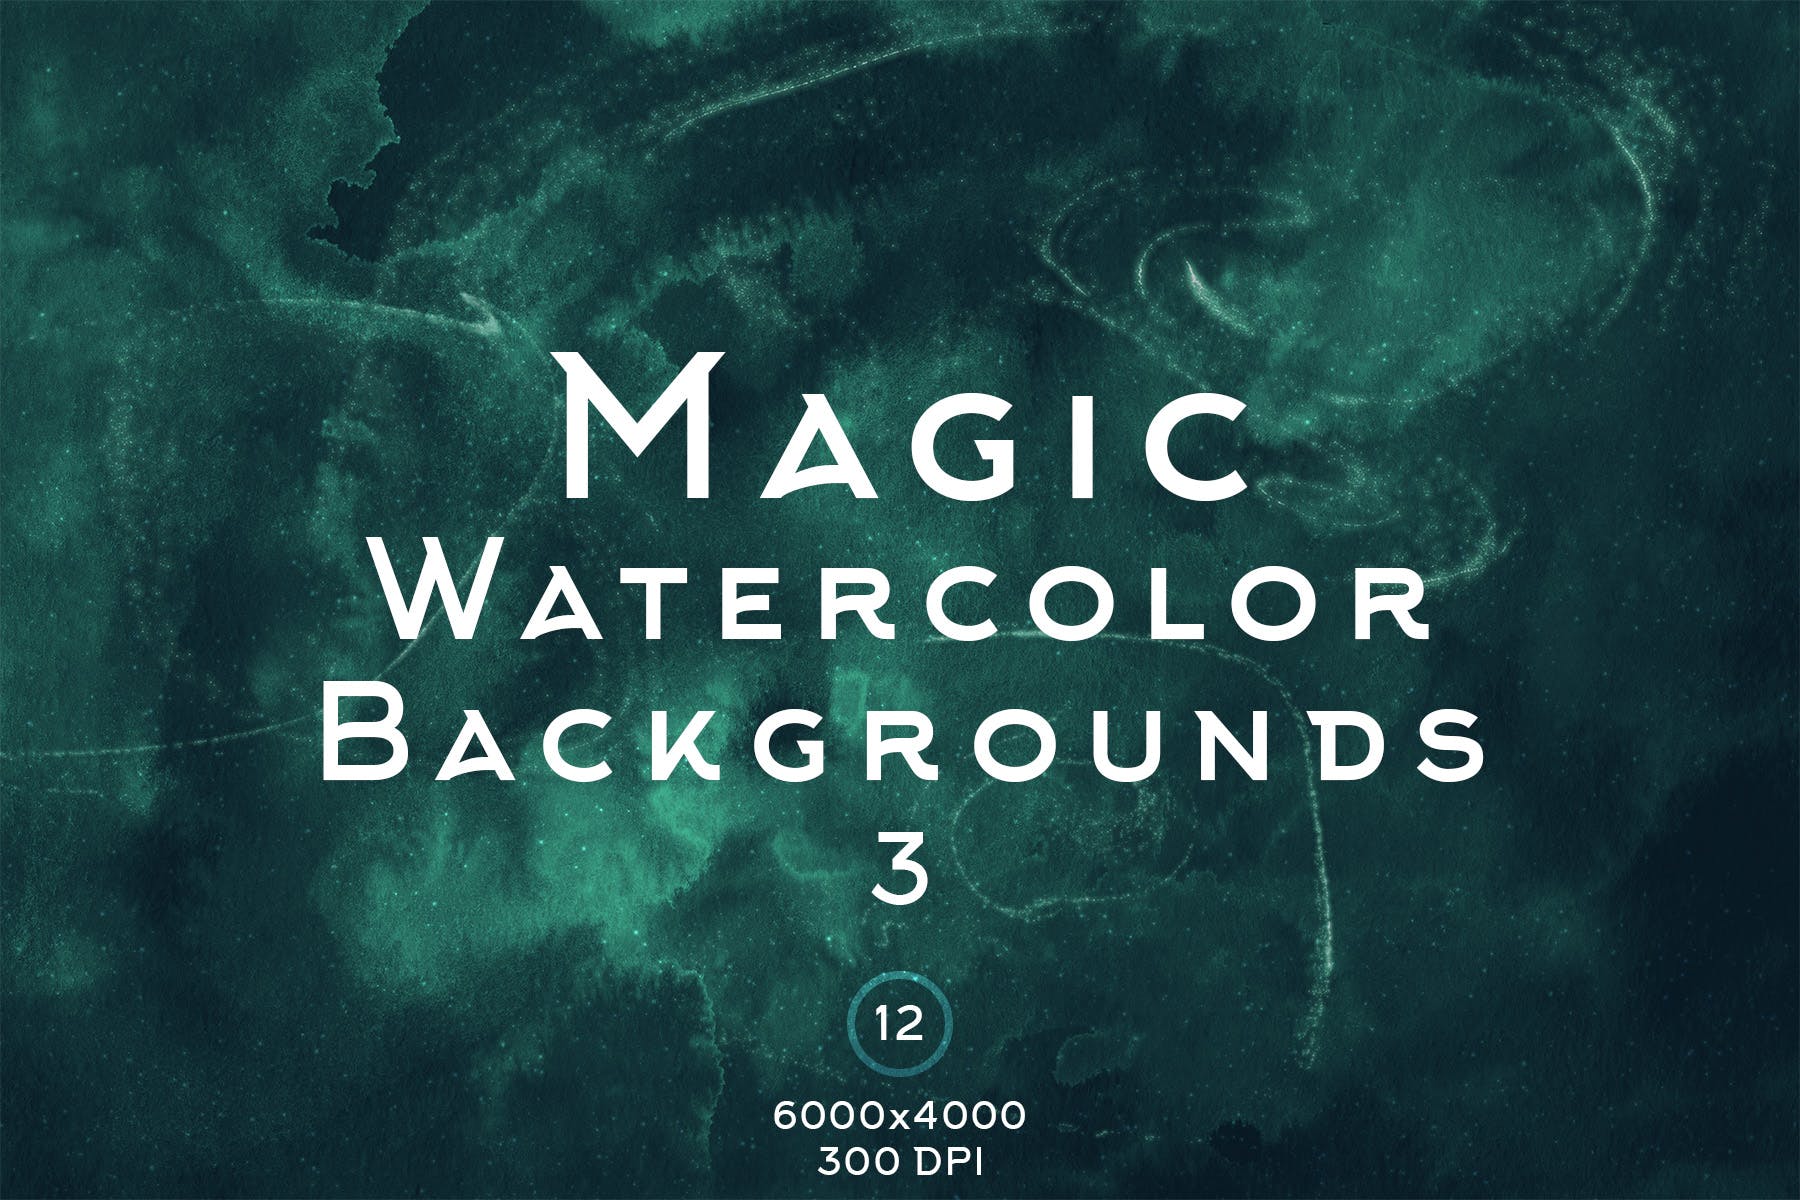 魔法水彩抽象背景图素材v3 Magic Watercolor Backgrounds 3插图